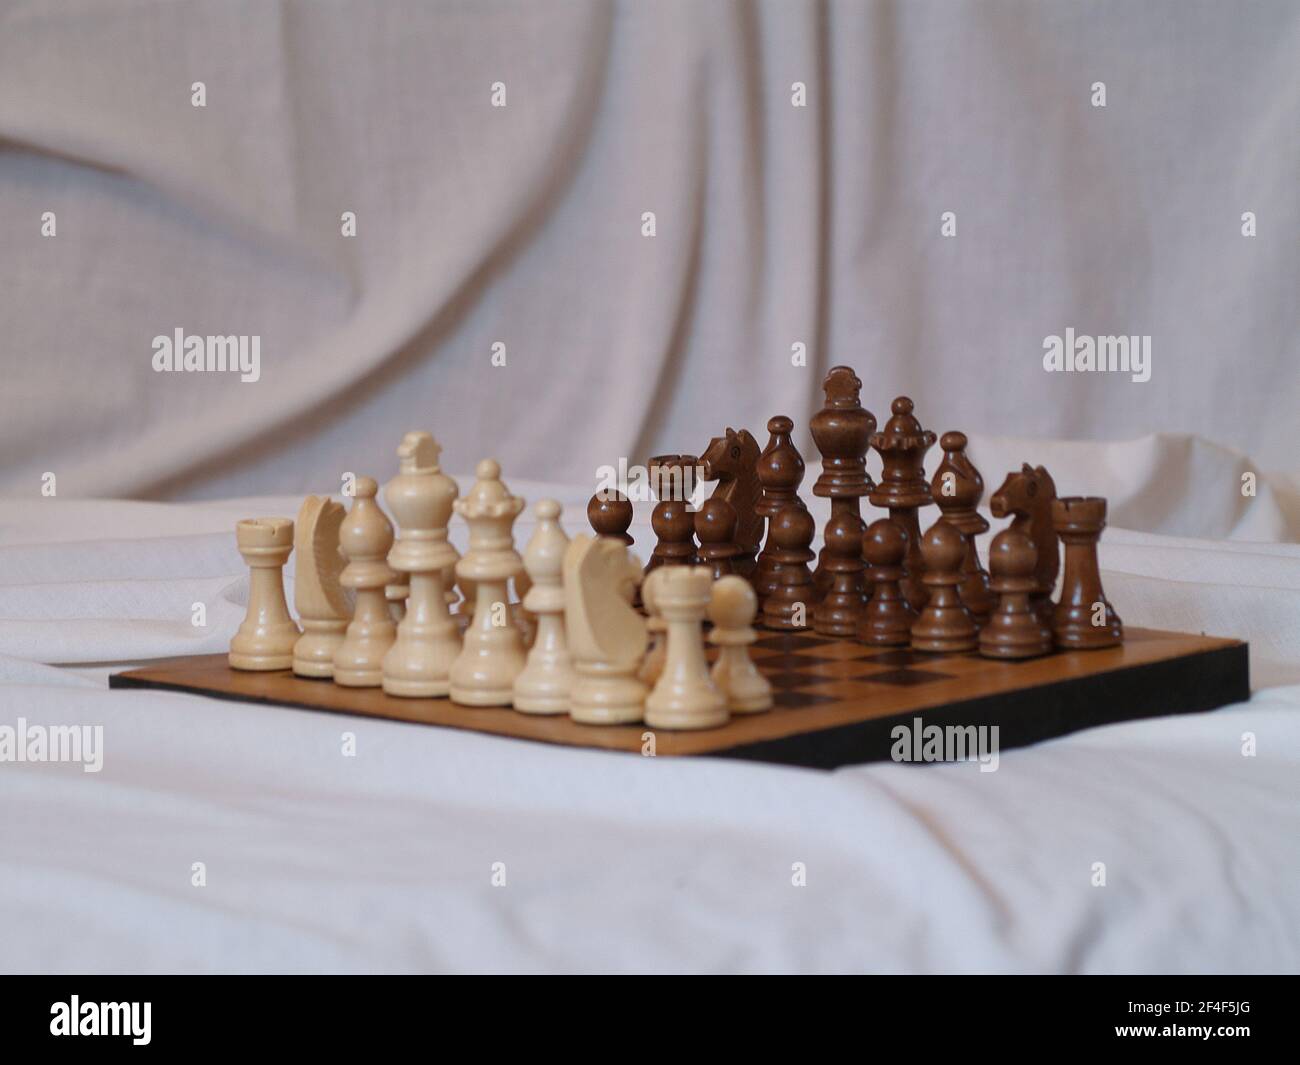 Das Spiel der Könige - Schach. Es schult das strategische Denken. Stock Photo